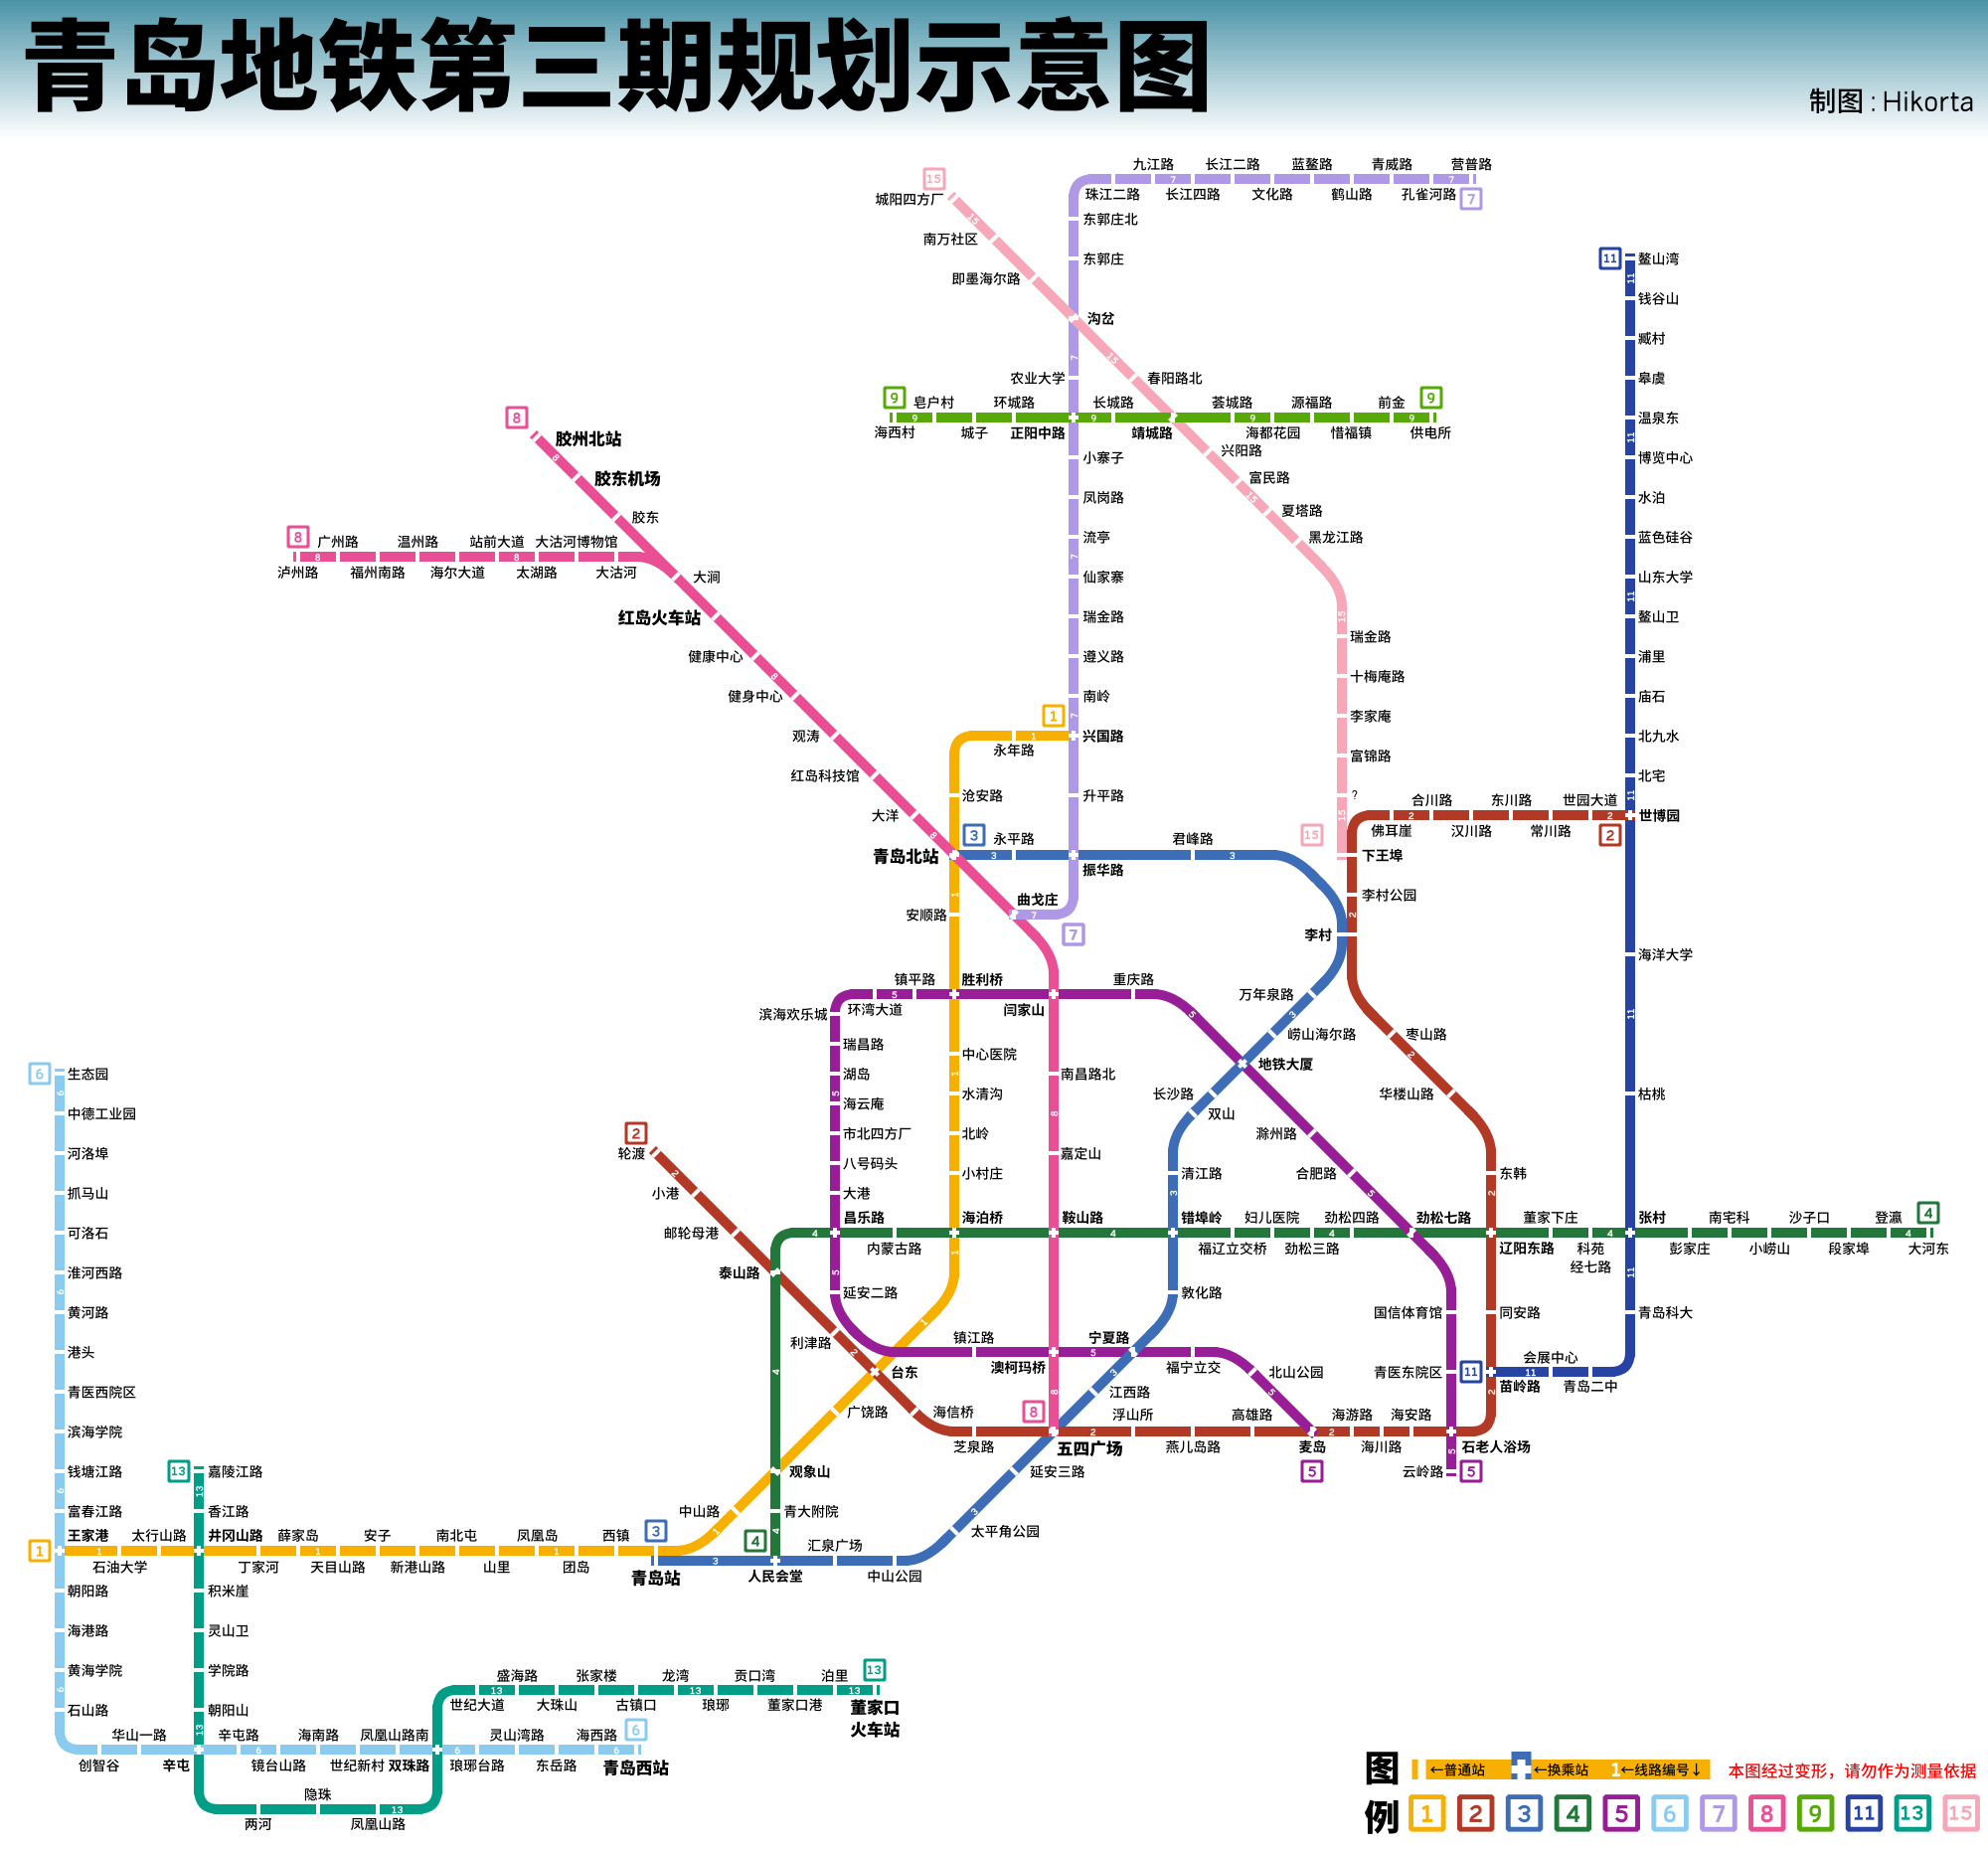 【皮鸭制图】青岛地铁第三期规划示意图